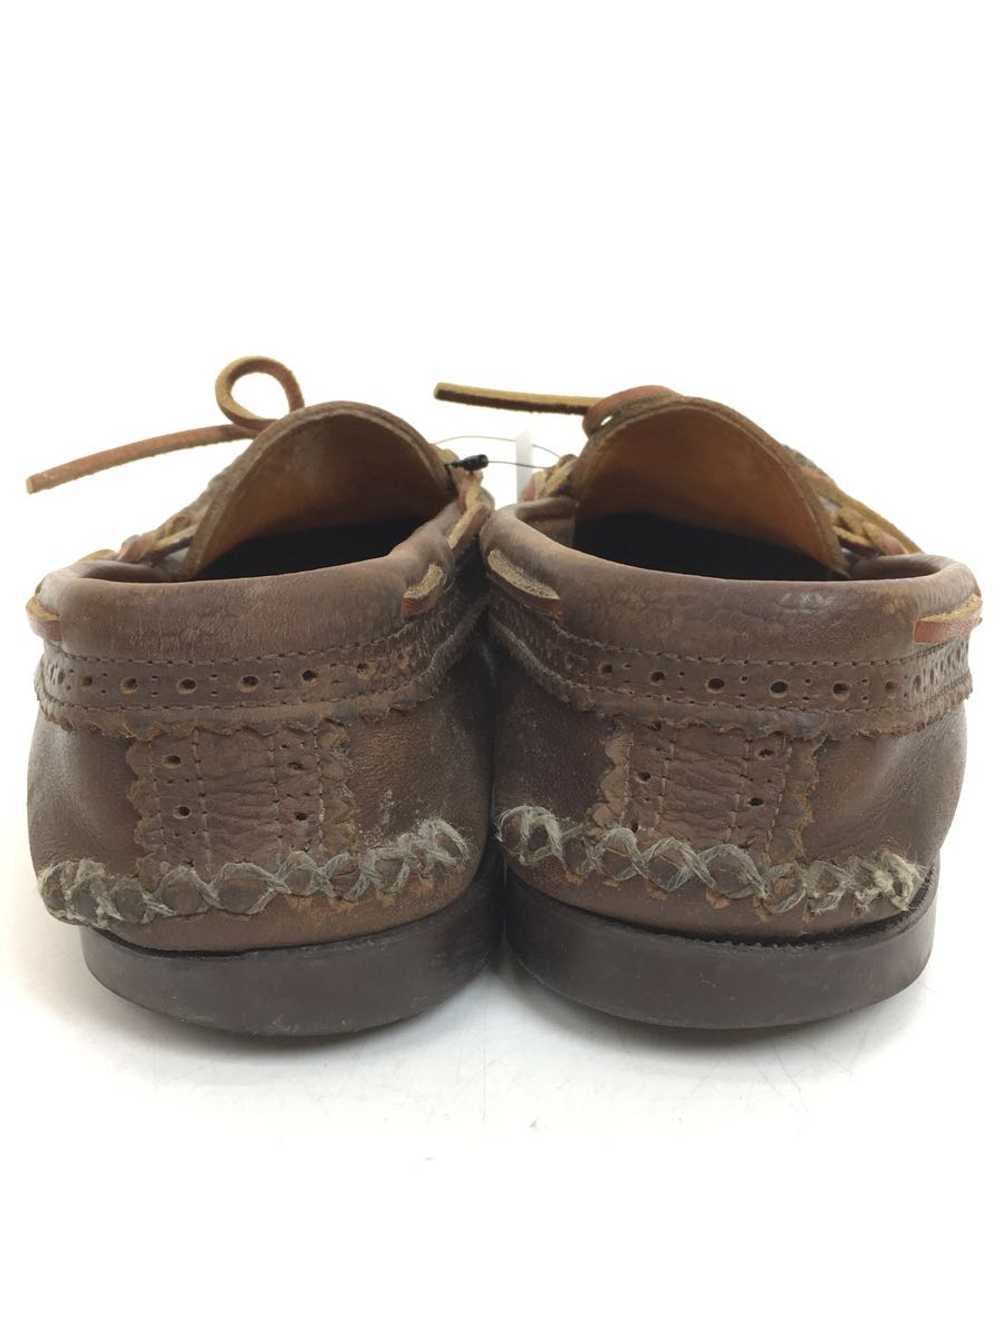 Yuketen Shoes/--/Brw/Leather Shoes - image 5